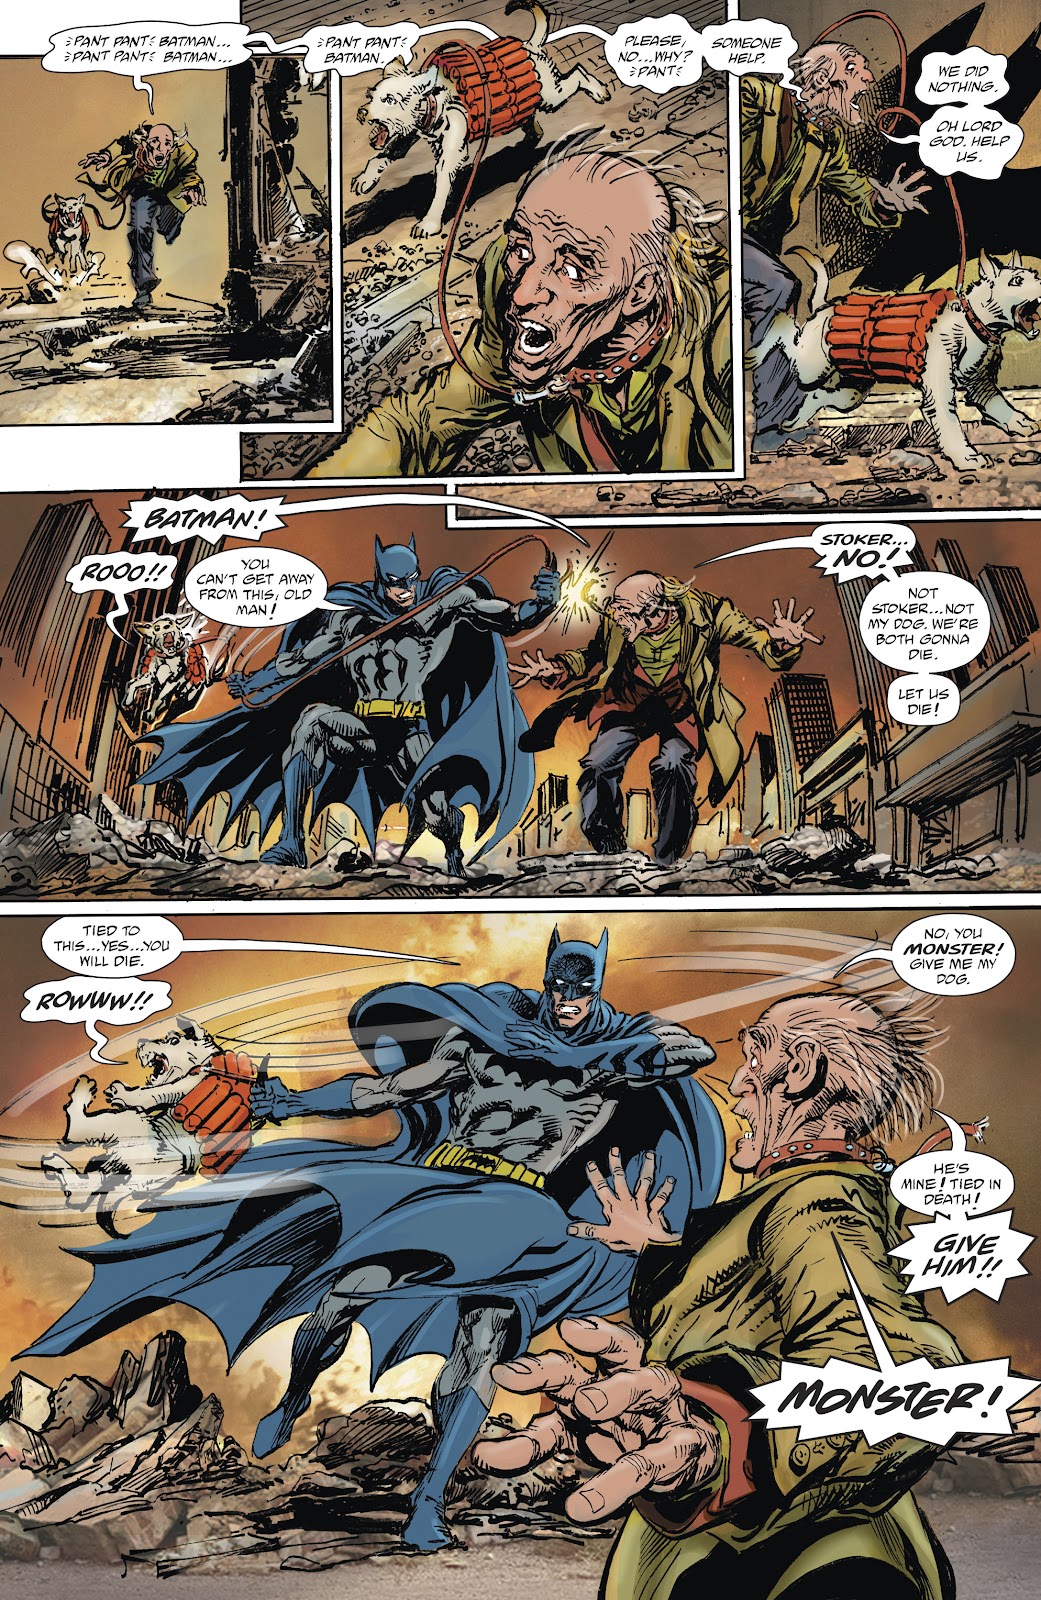 Batman Vs. Ra's al Ghul issue 1 - Page 3